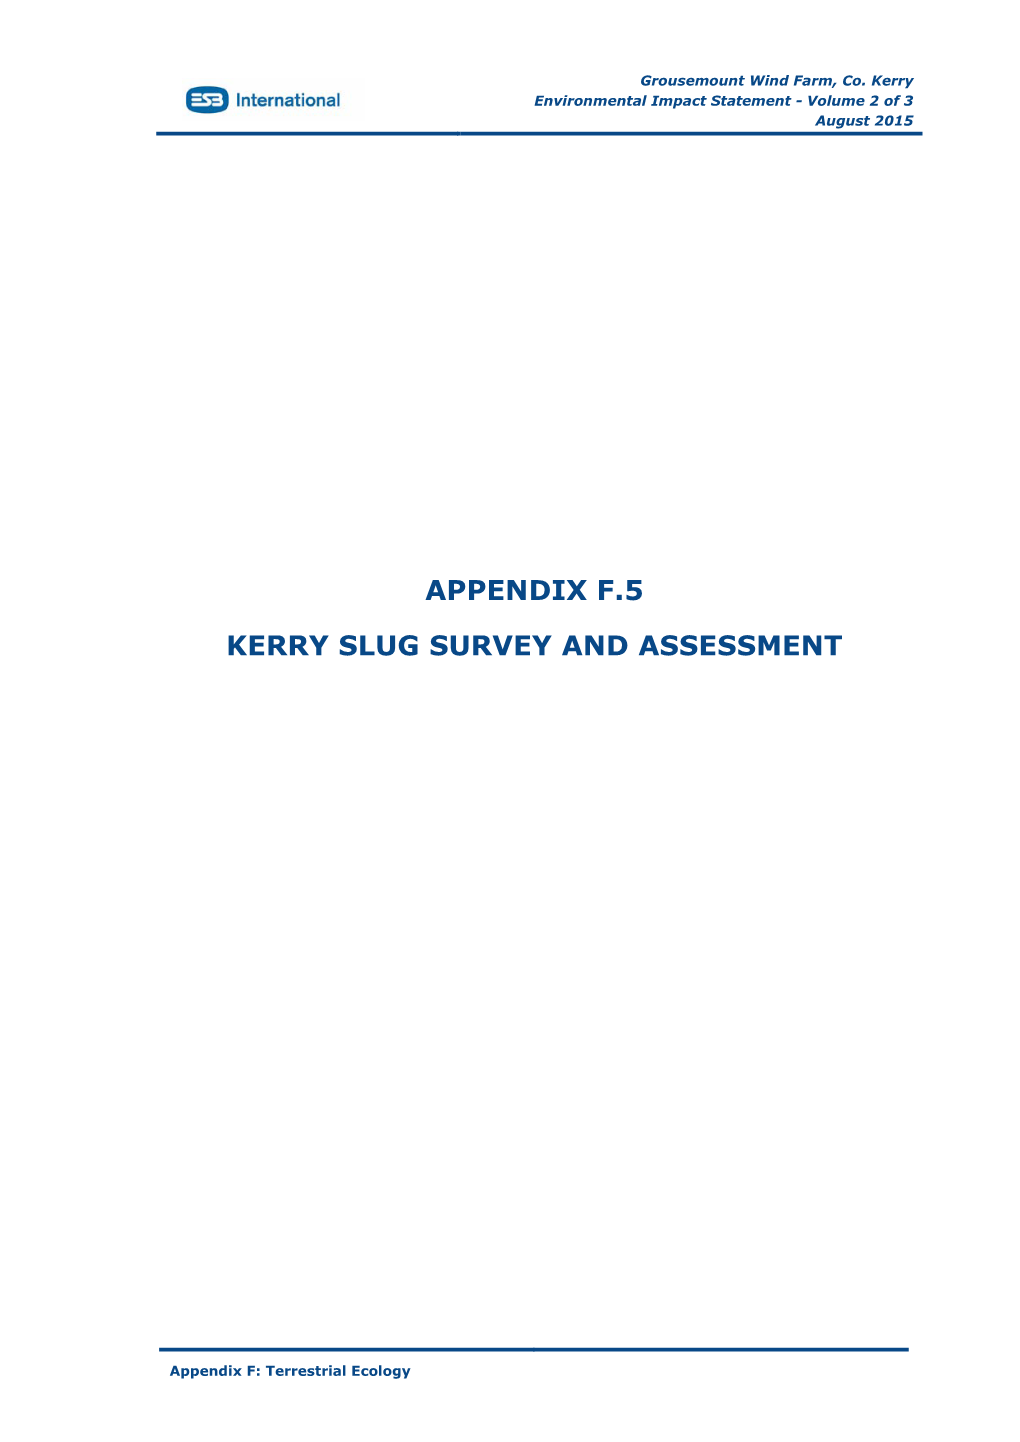 Appendix-F5 Terrestrial Ecology Kerry Slug Survey Assessment